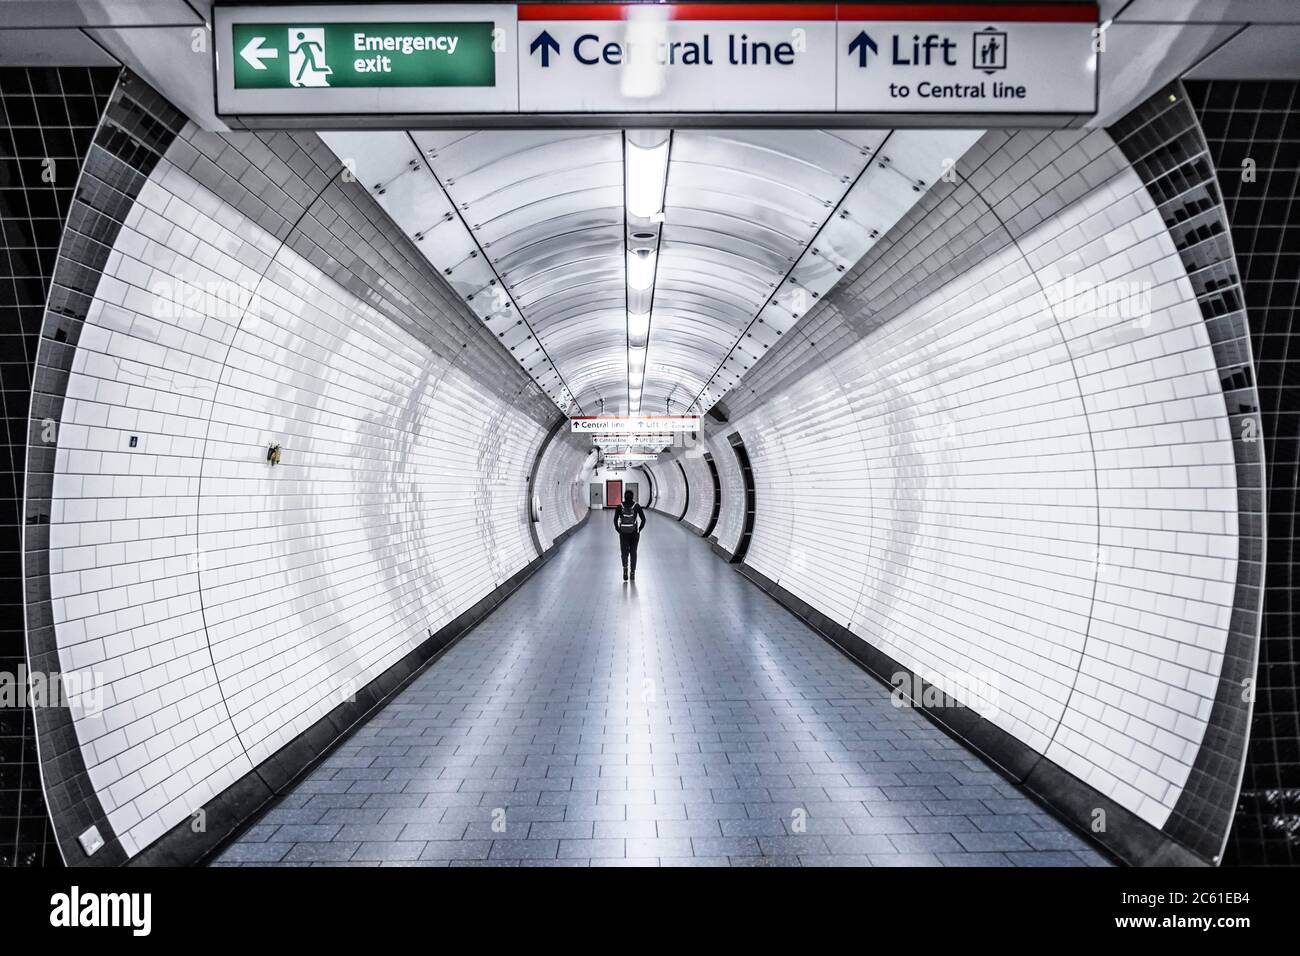 Une femme qui descend un passage vide dans une station de métro de la ligne centrale du métro de Londres Banque D'Images